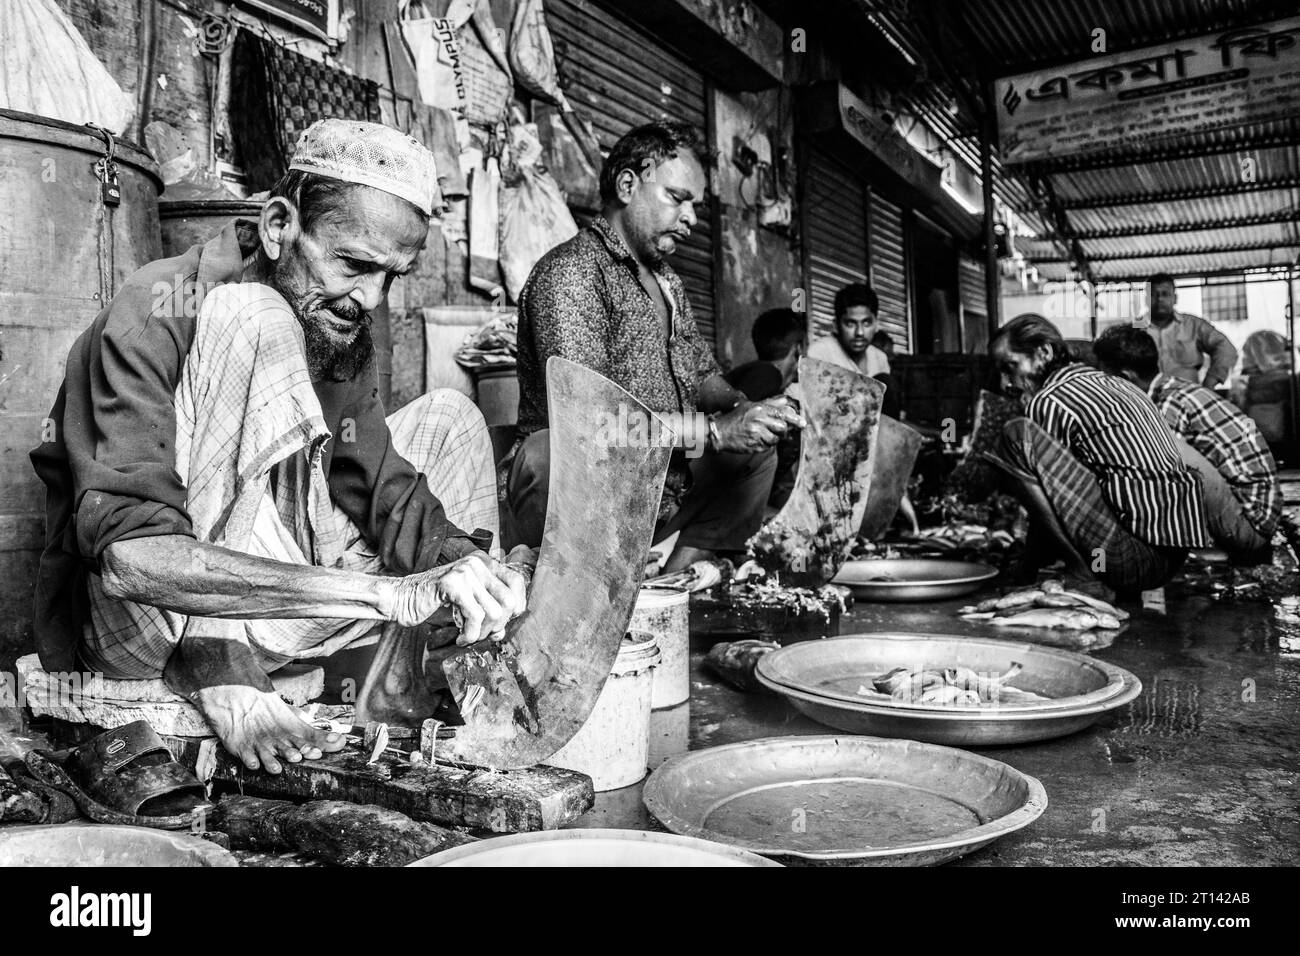 De pauvres vieillards coupent du poisson dans un marché aux poissons local à Barishal, au Bangladesh. Banque D'Images